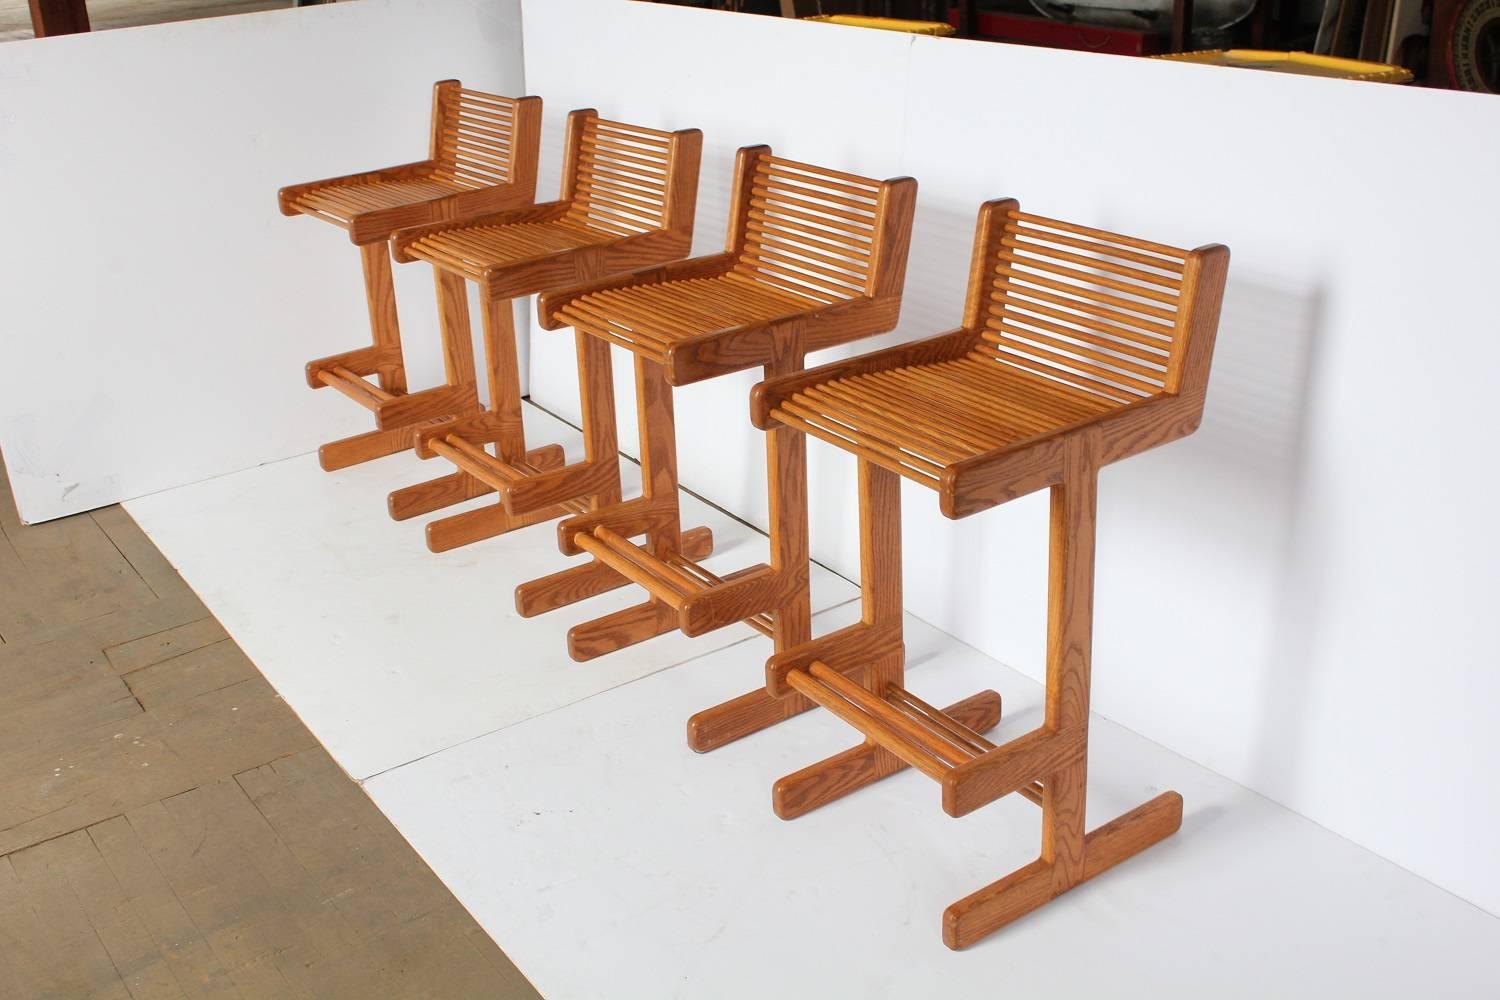 Stylish midcentury wood bar stools.